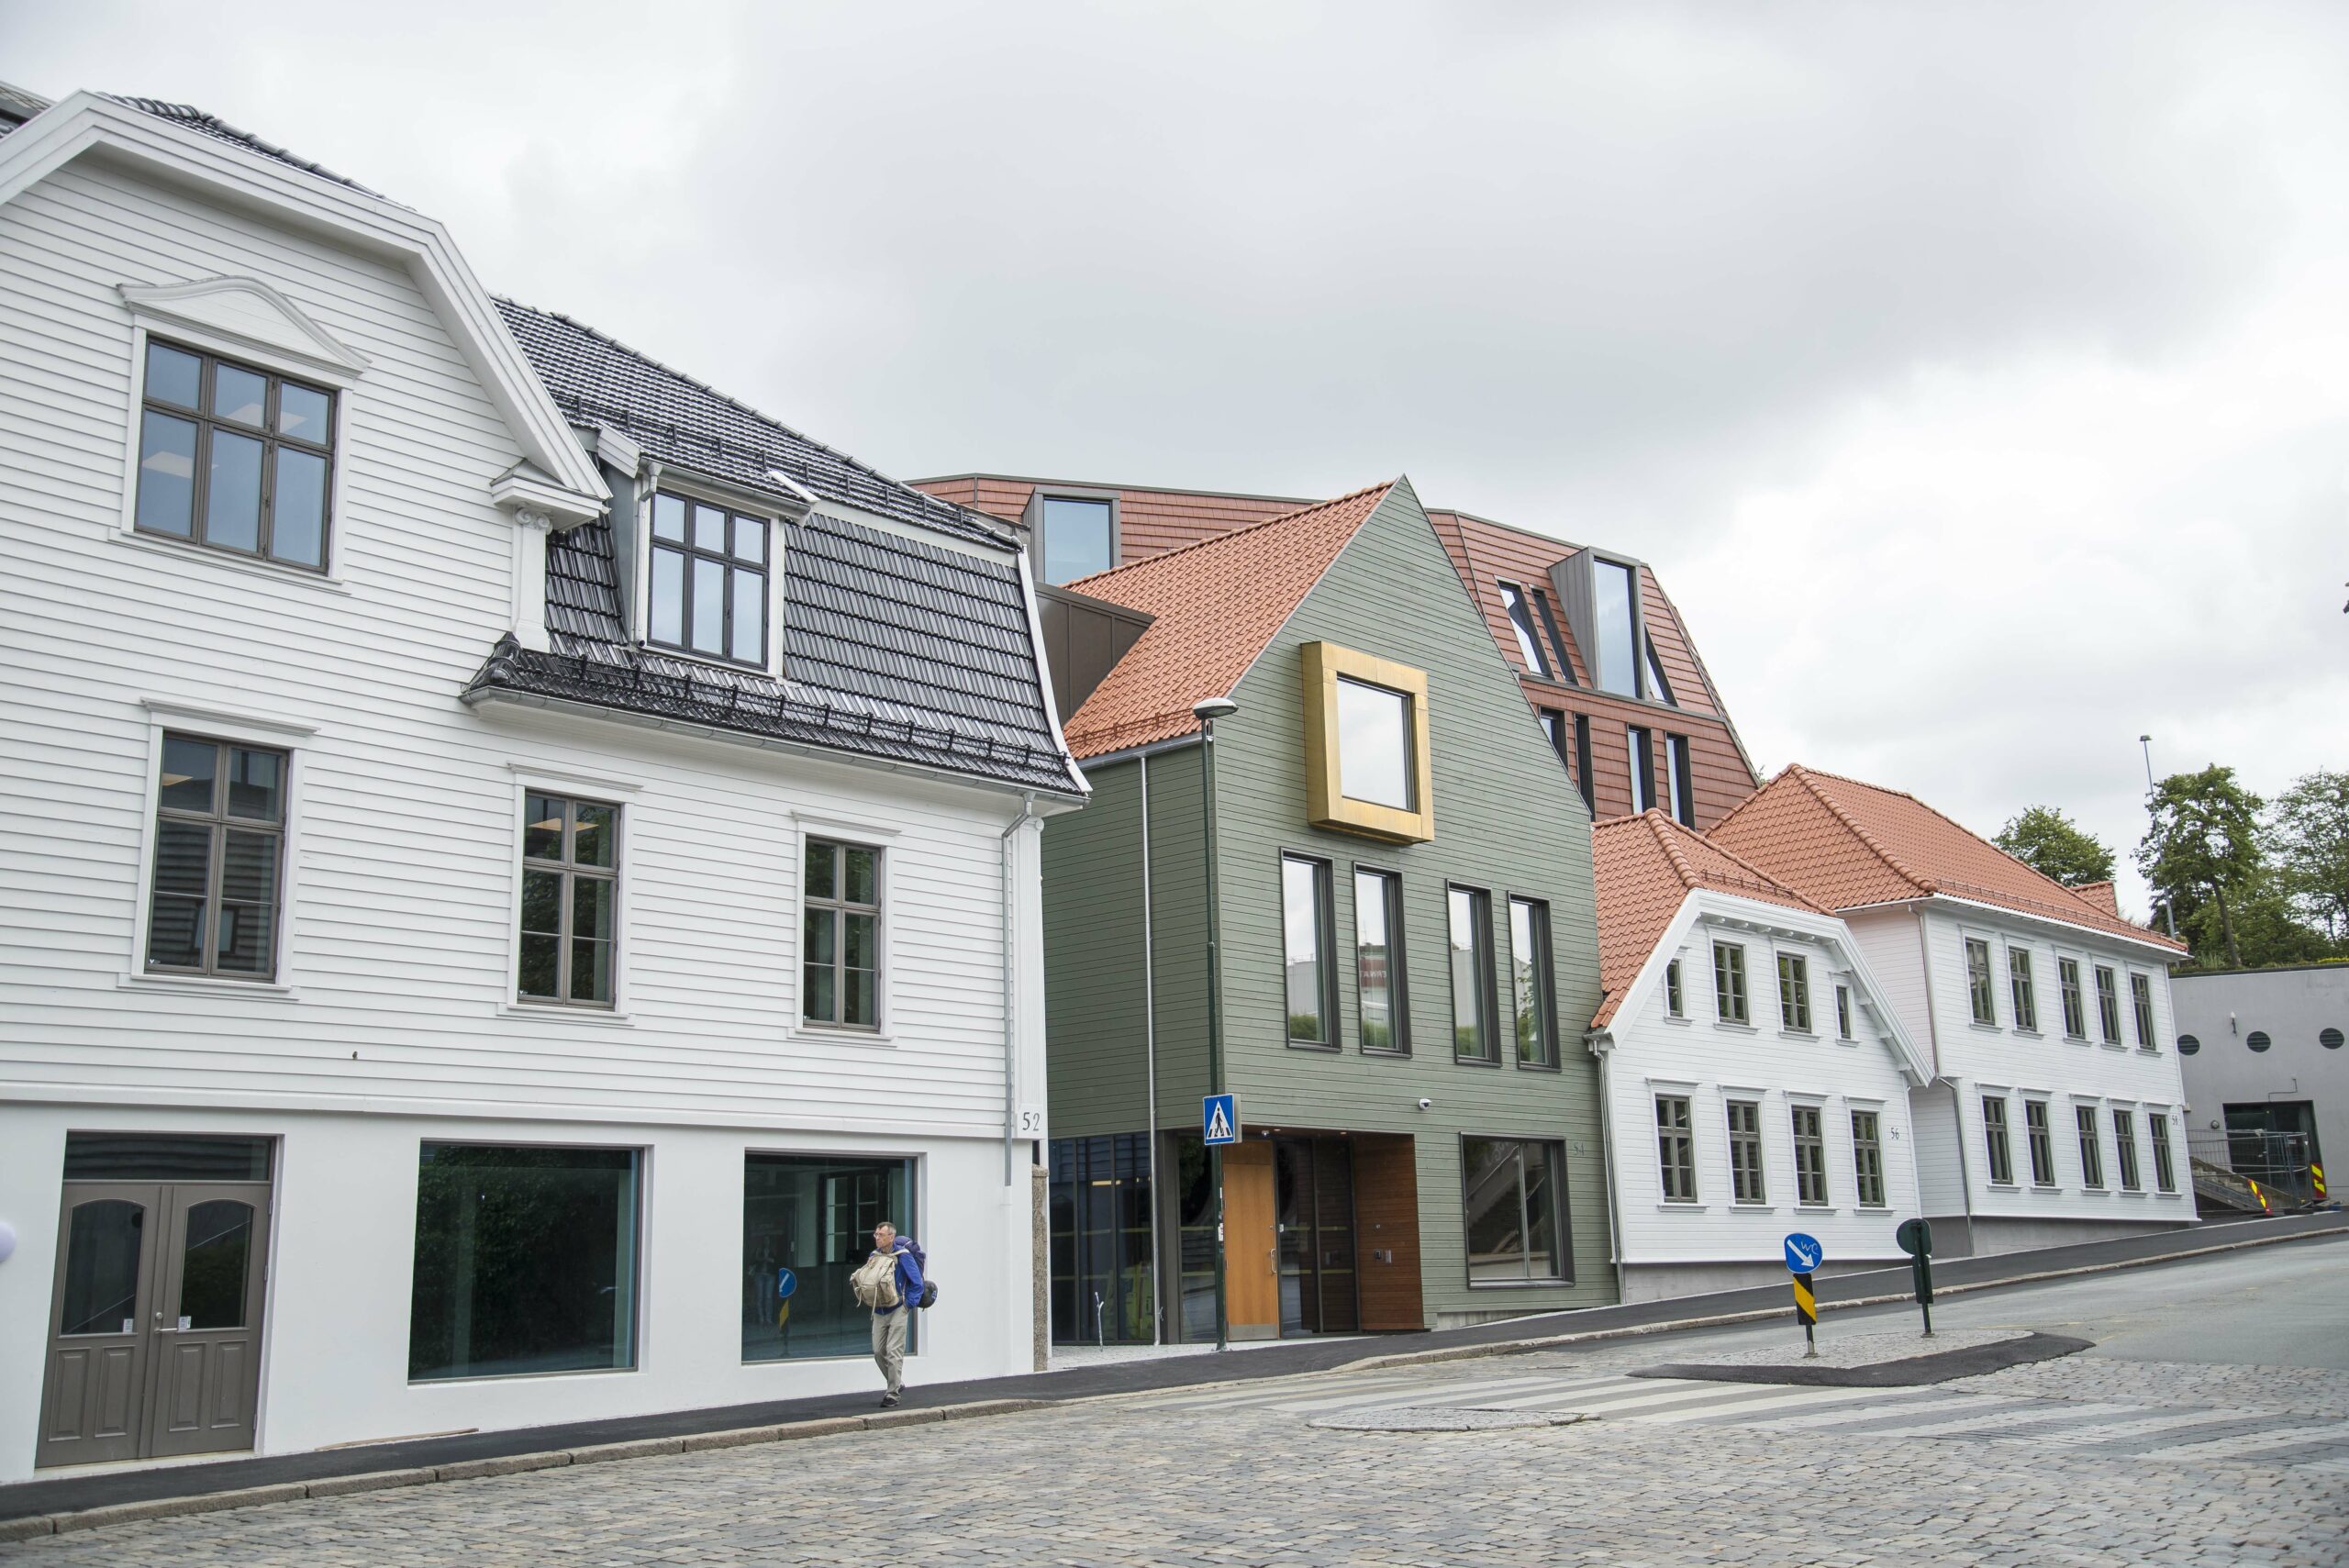 Industri Energi har pusset opp byggene sine midt i hjertet av Stavanger. Foto: Atle Espen Helgesen